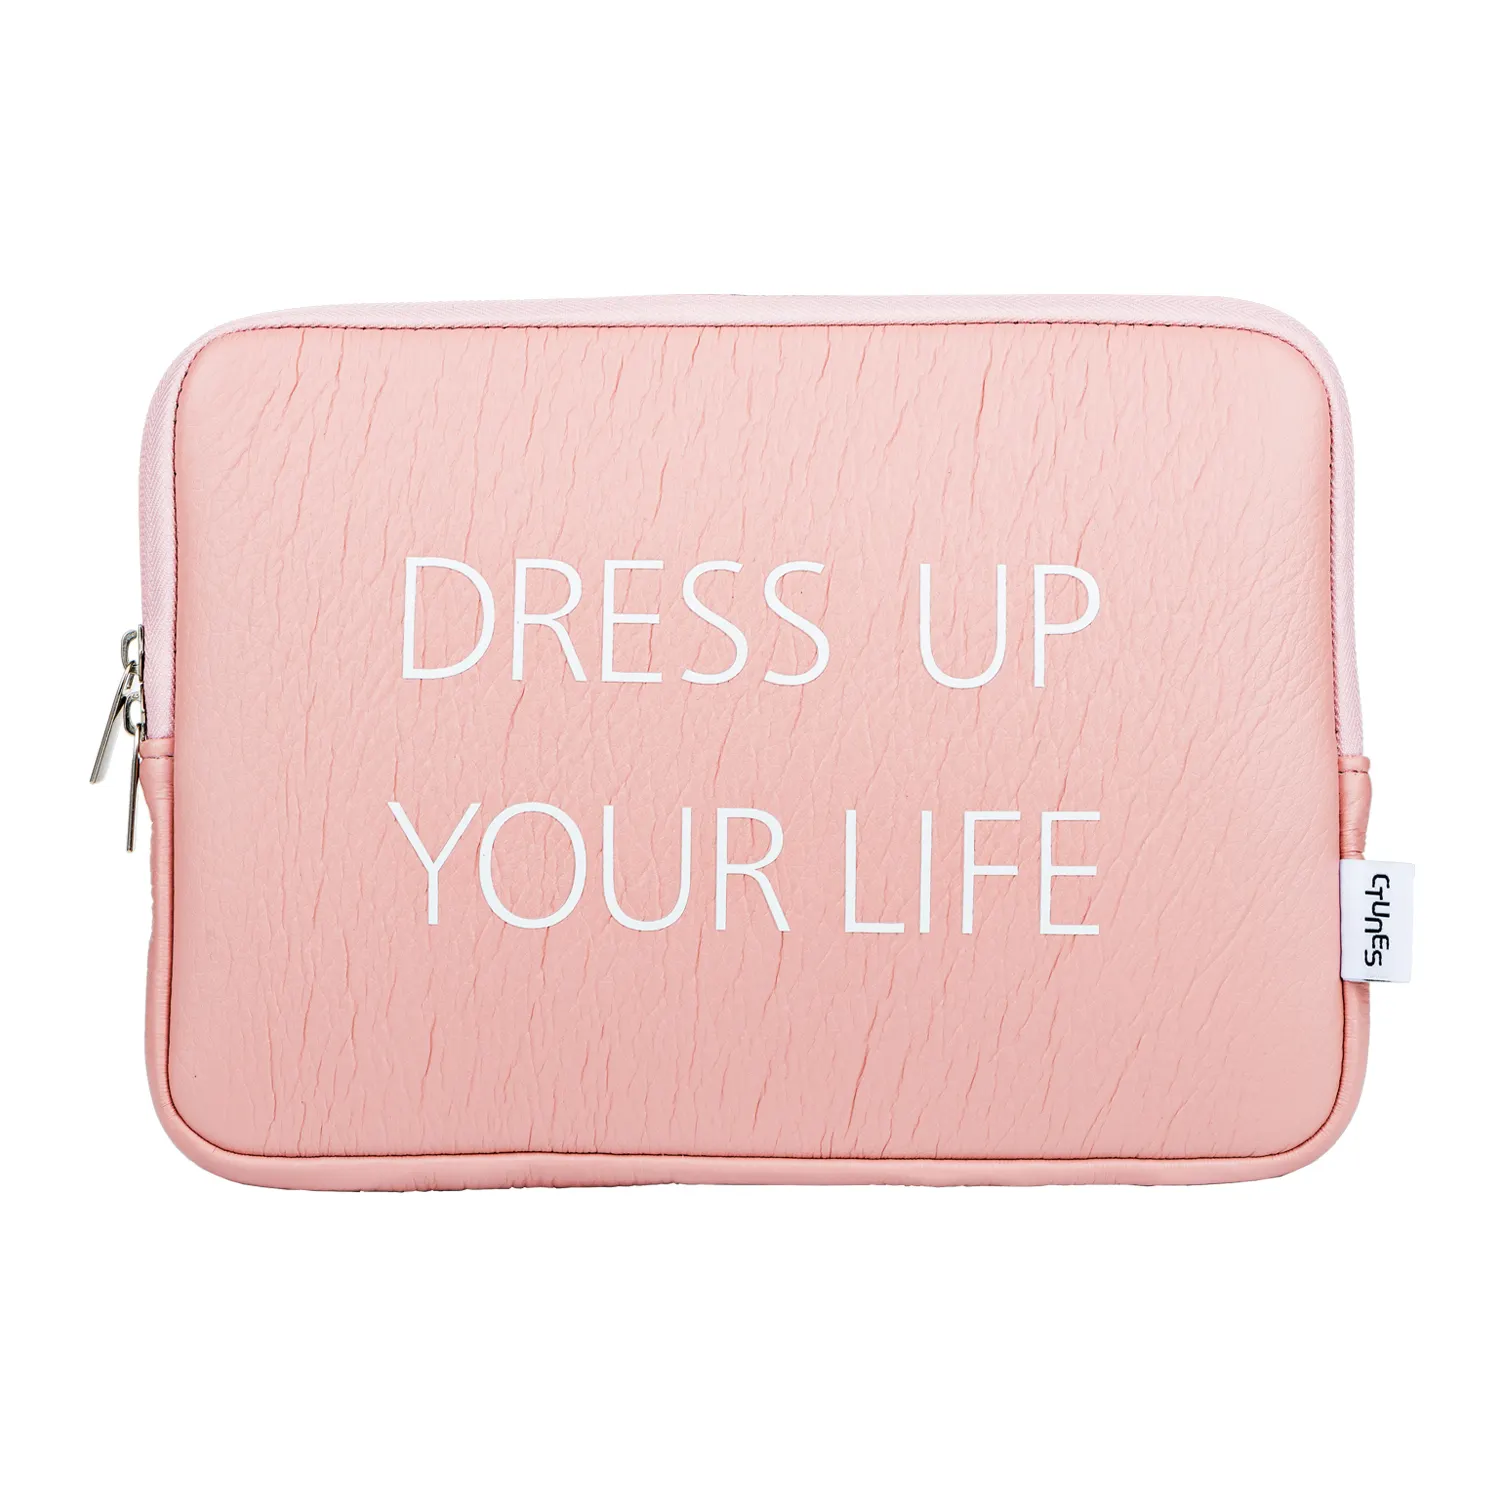 Hot Selling Groothandel Roze Soft Case Sleeve Laptop Tas Voor Ipad